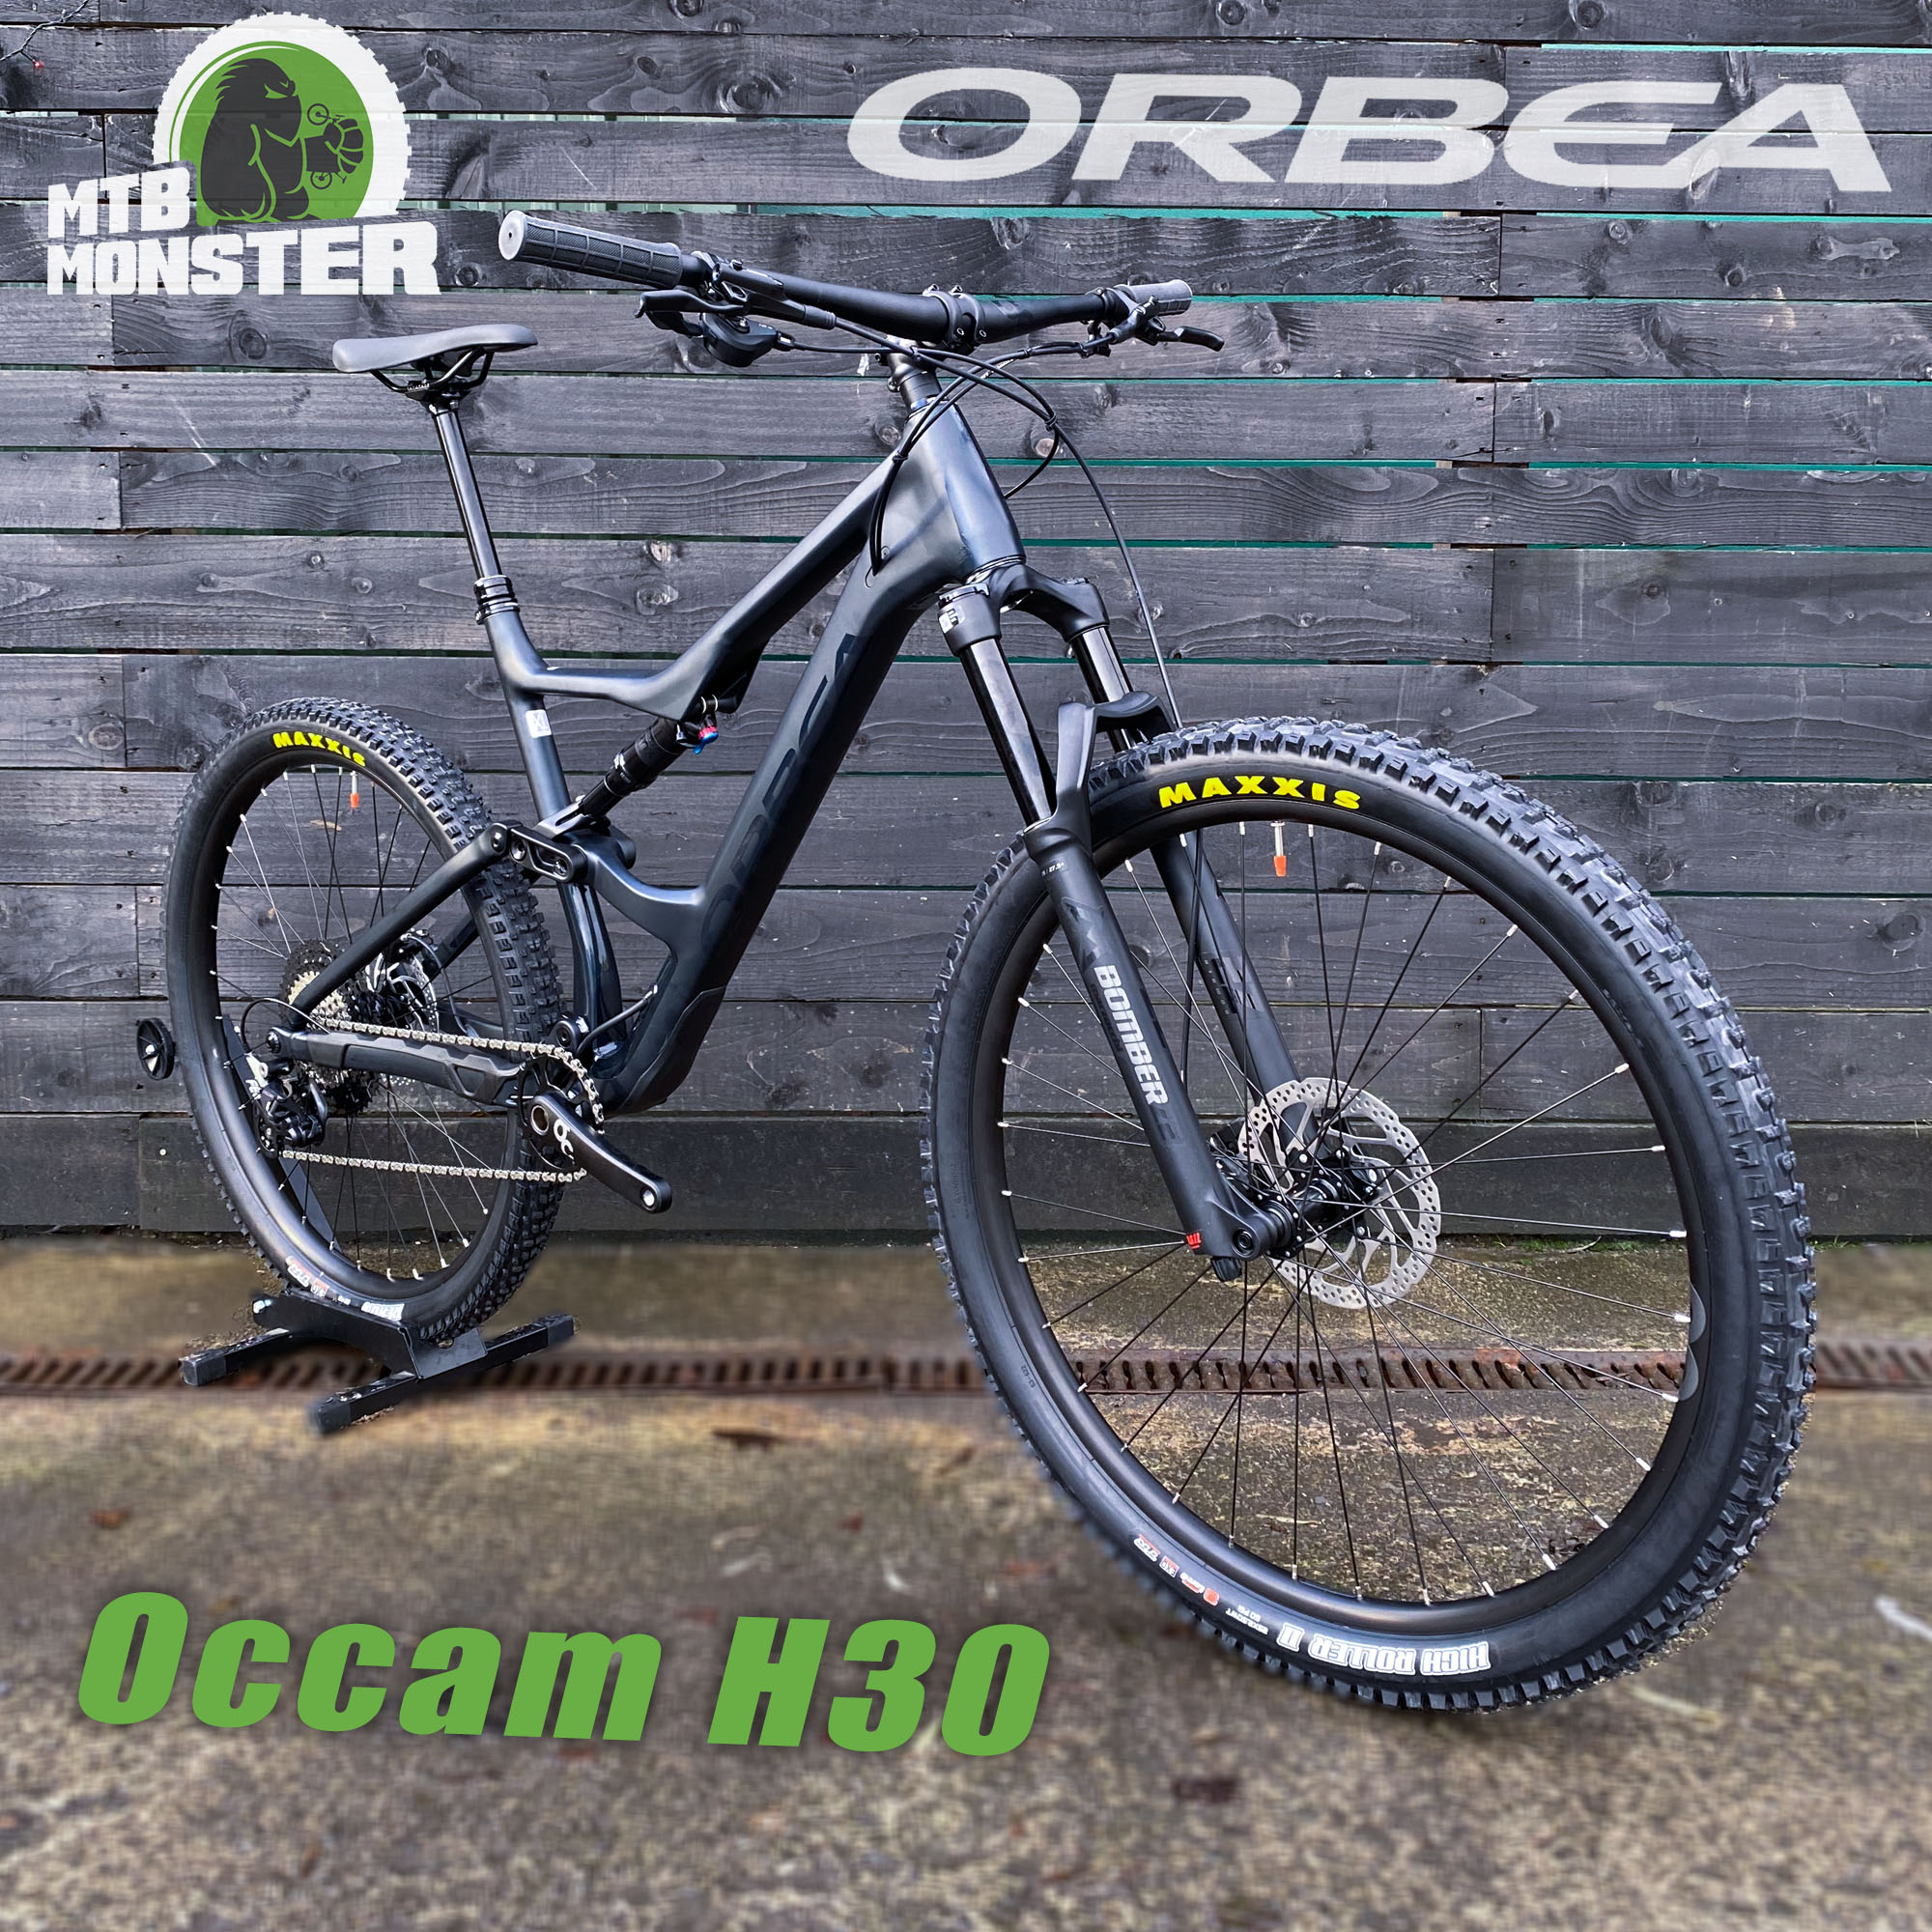 Orbea Occam H30